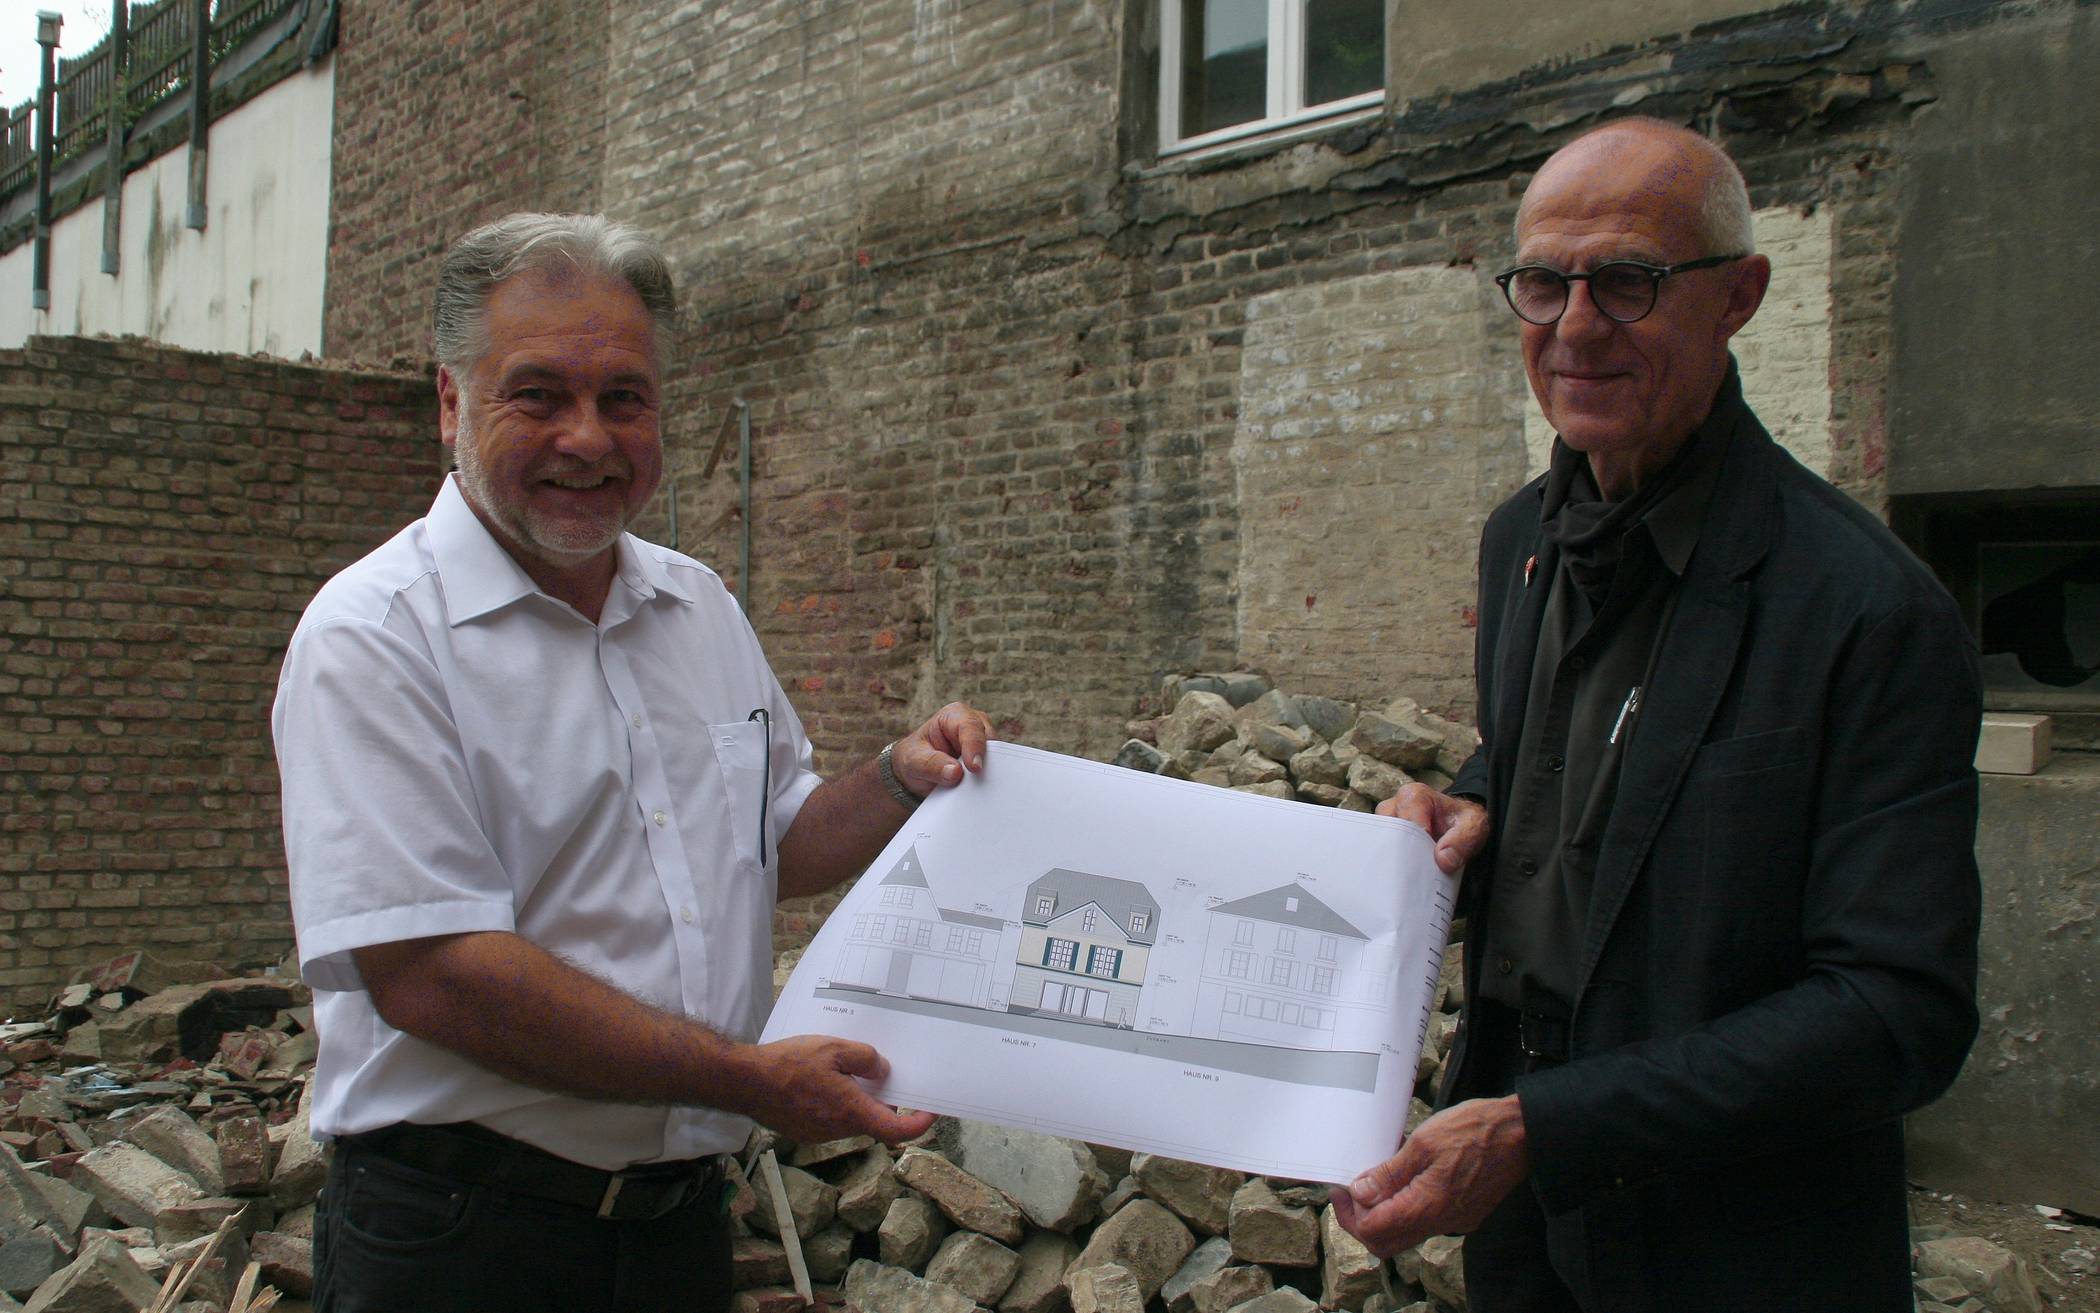  Bürgermeister Thomas Dinkelmann und Architekt Karl J. Stamm mit einer Zeichnung, auf der die Vorderansicht des Hauses Oberstraße 7 zu sehen ist.  